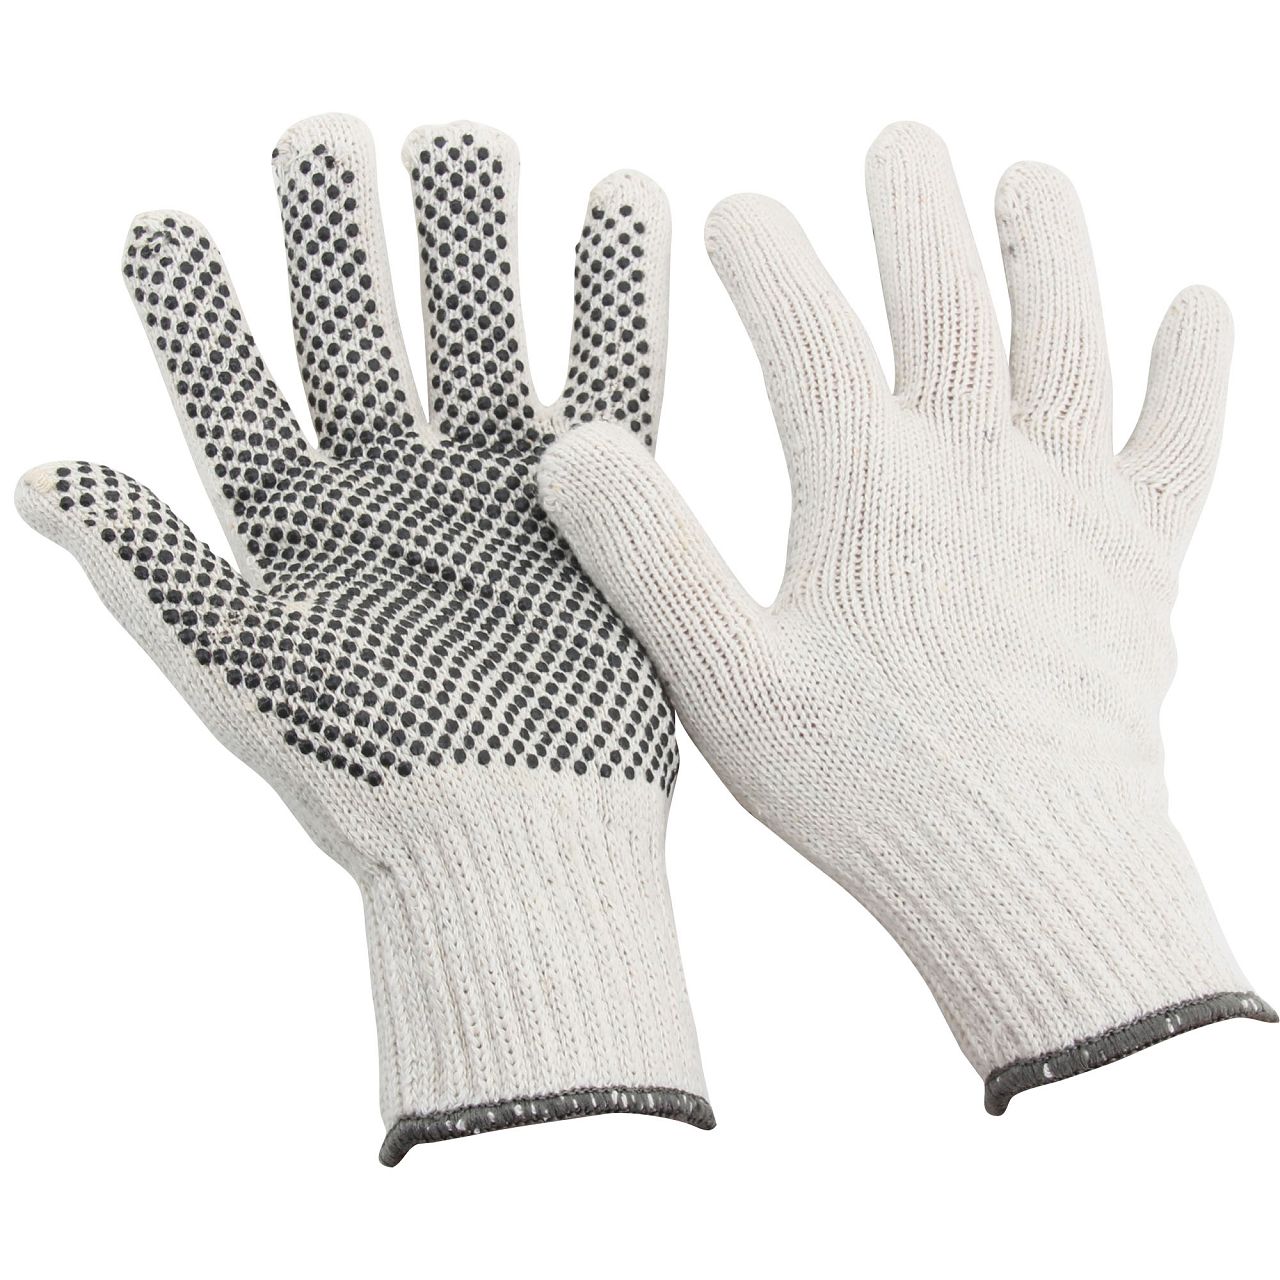 Handschuhe Arbeitshandschuhe BAUMWOLLE - GENOPPT Größe 10 / XL (1 Paar)